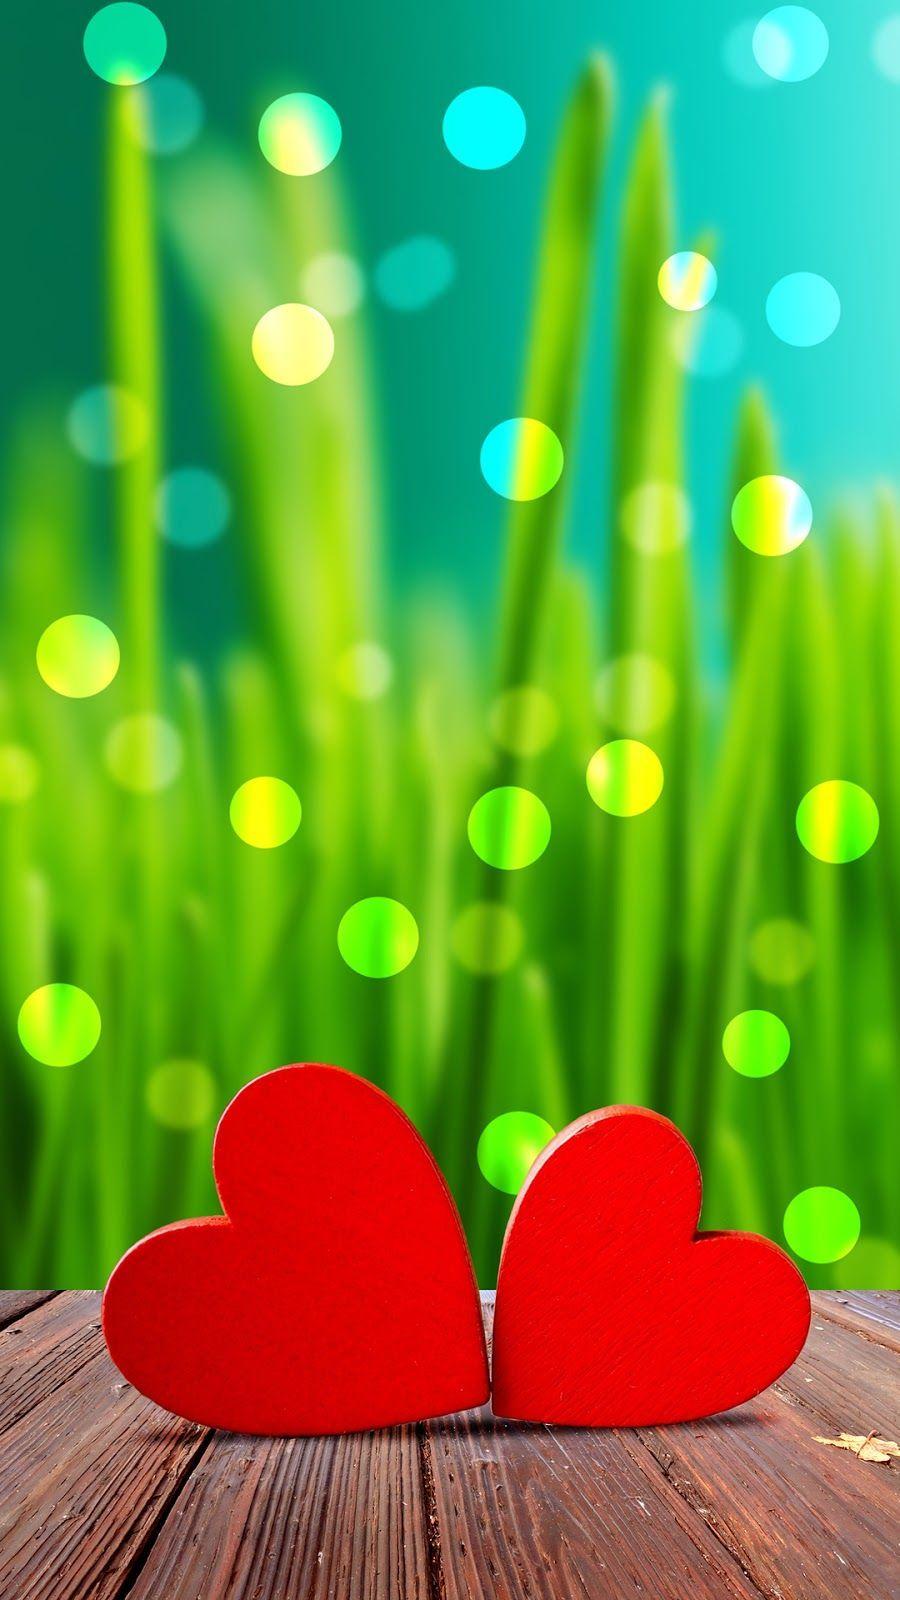 Cute Love Wallpaper iPhone 6S Plus. Wallpaper